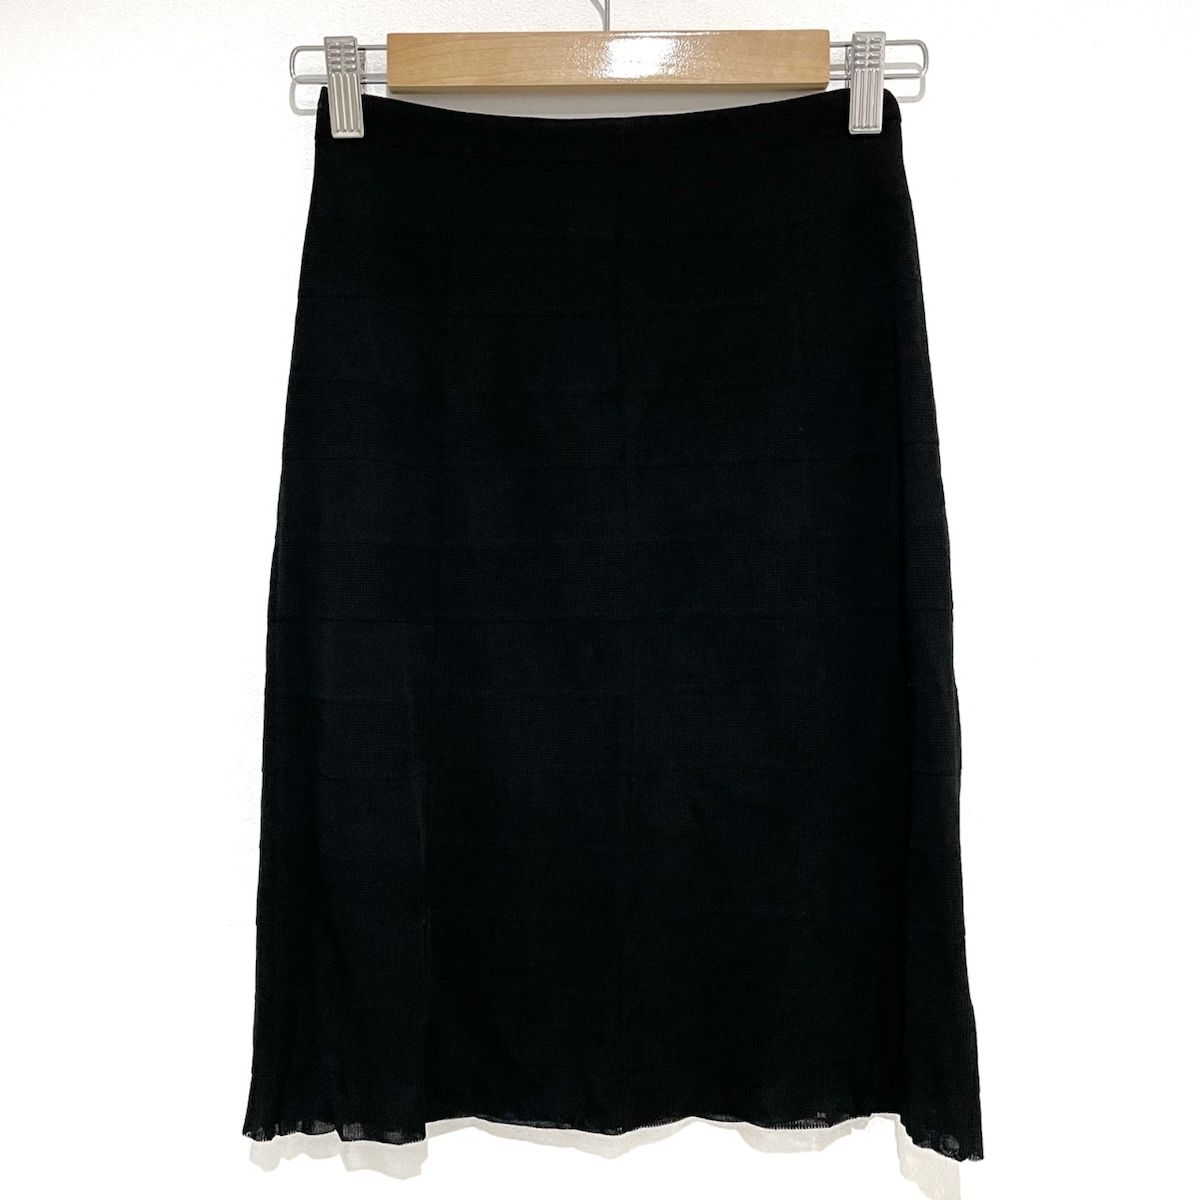 CHANEL(シャネル) スカート サイズ36 S レディース美品 - P30284 黒 ニット/ウエストゴム - メルカリ